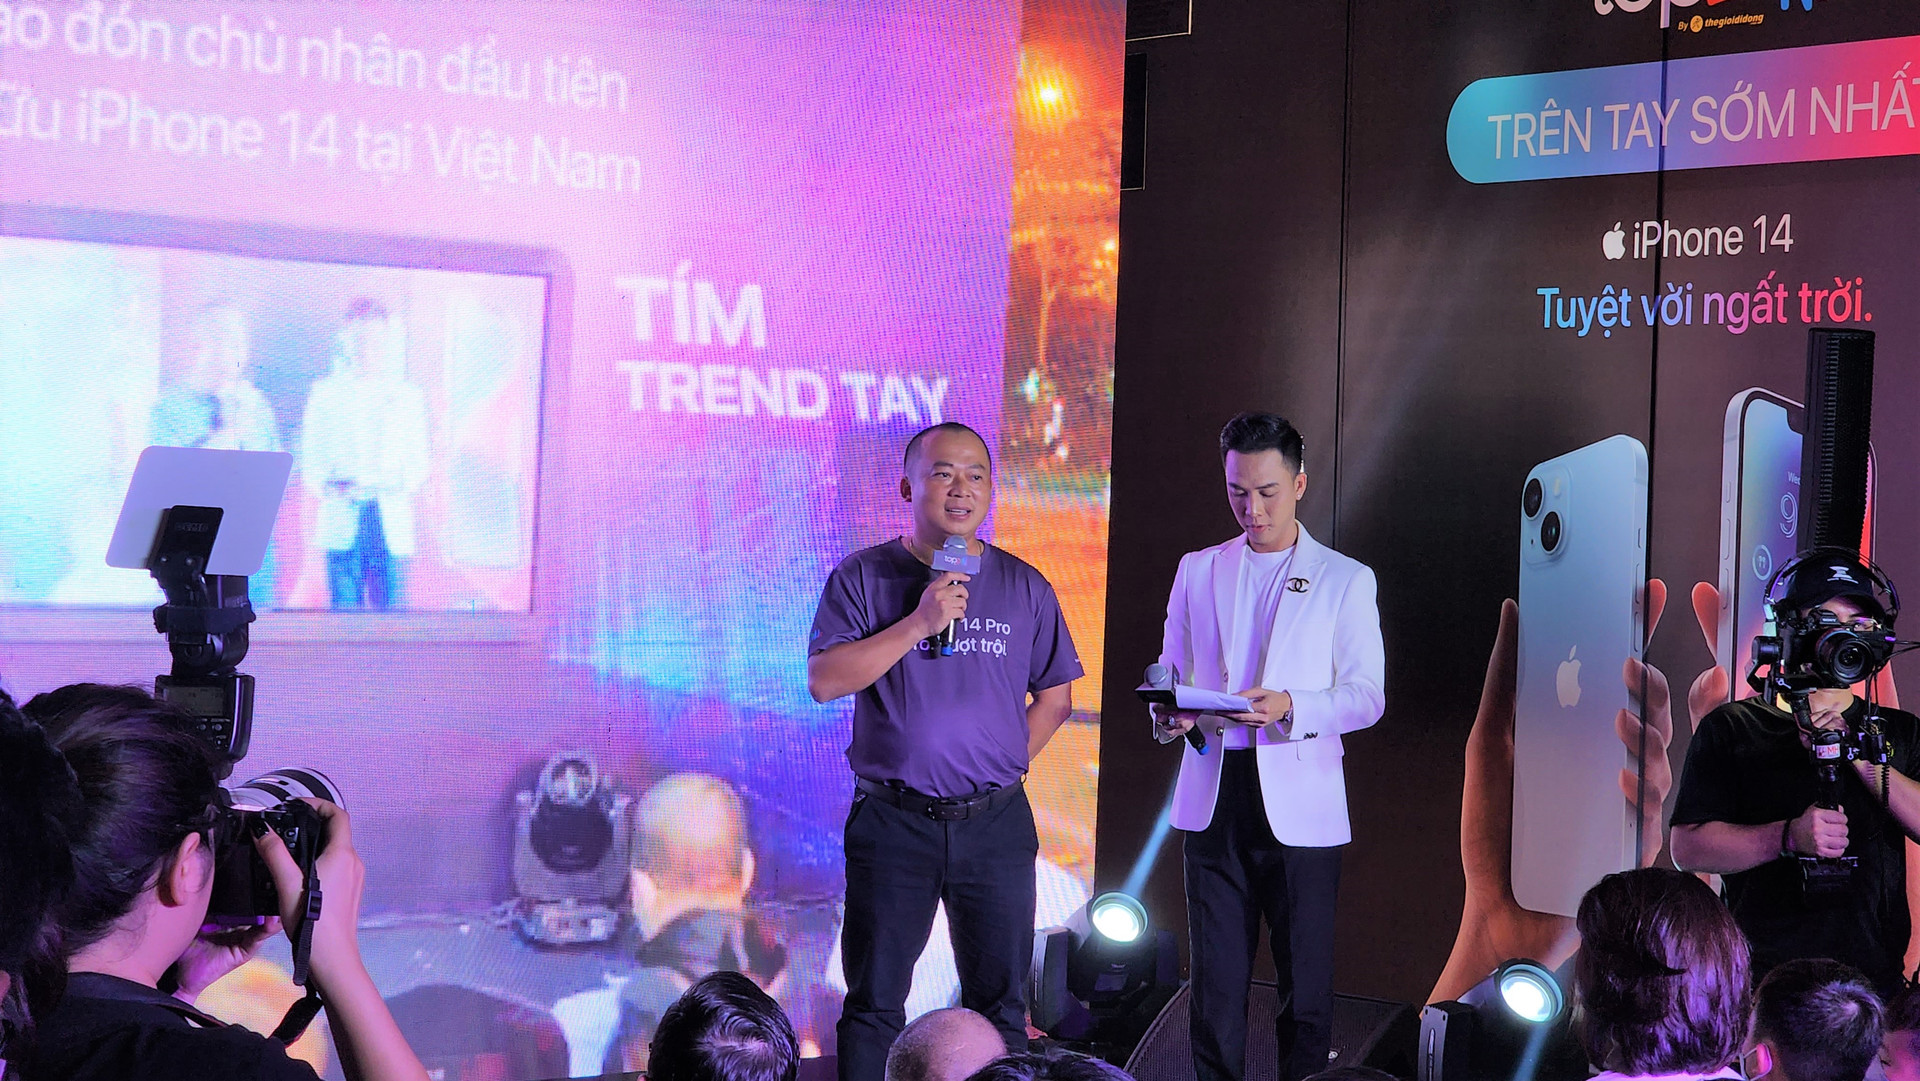 Việt Nam chính thức mở bán iPhone 14: TGDĐ thu về tầm 2.000 tỷ đồng, sức mua gấp 3 so với iPhone 13 - Ảnh 1.